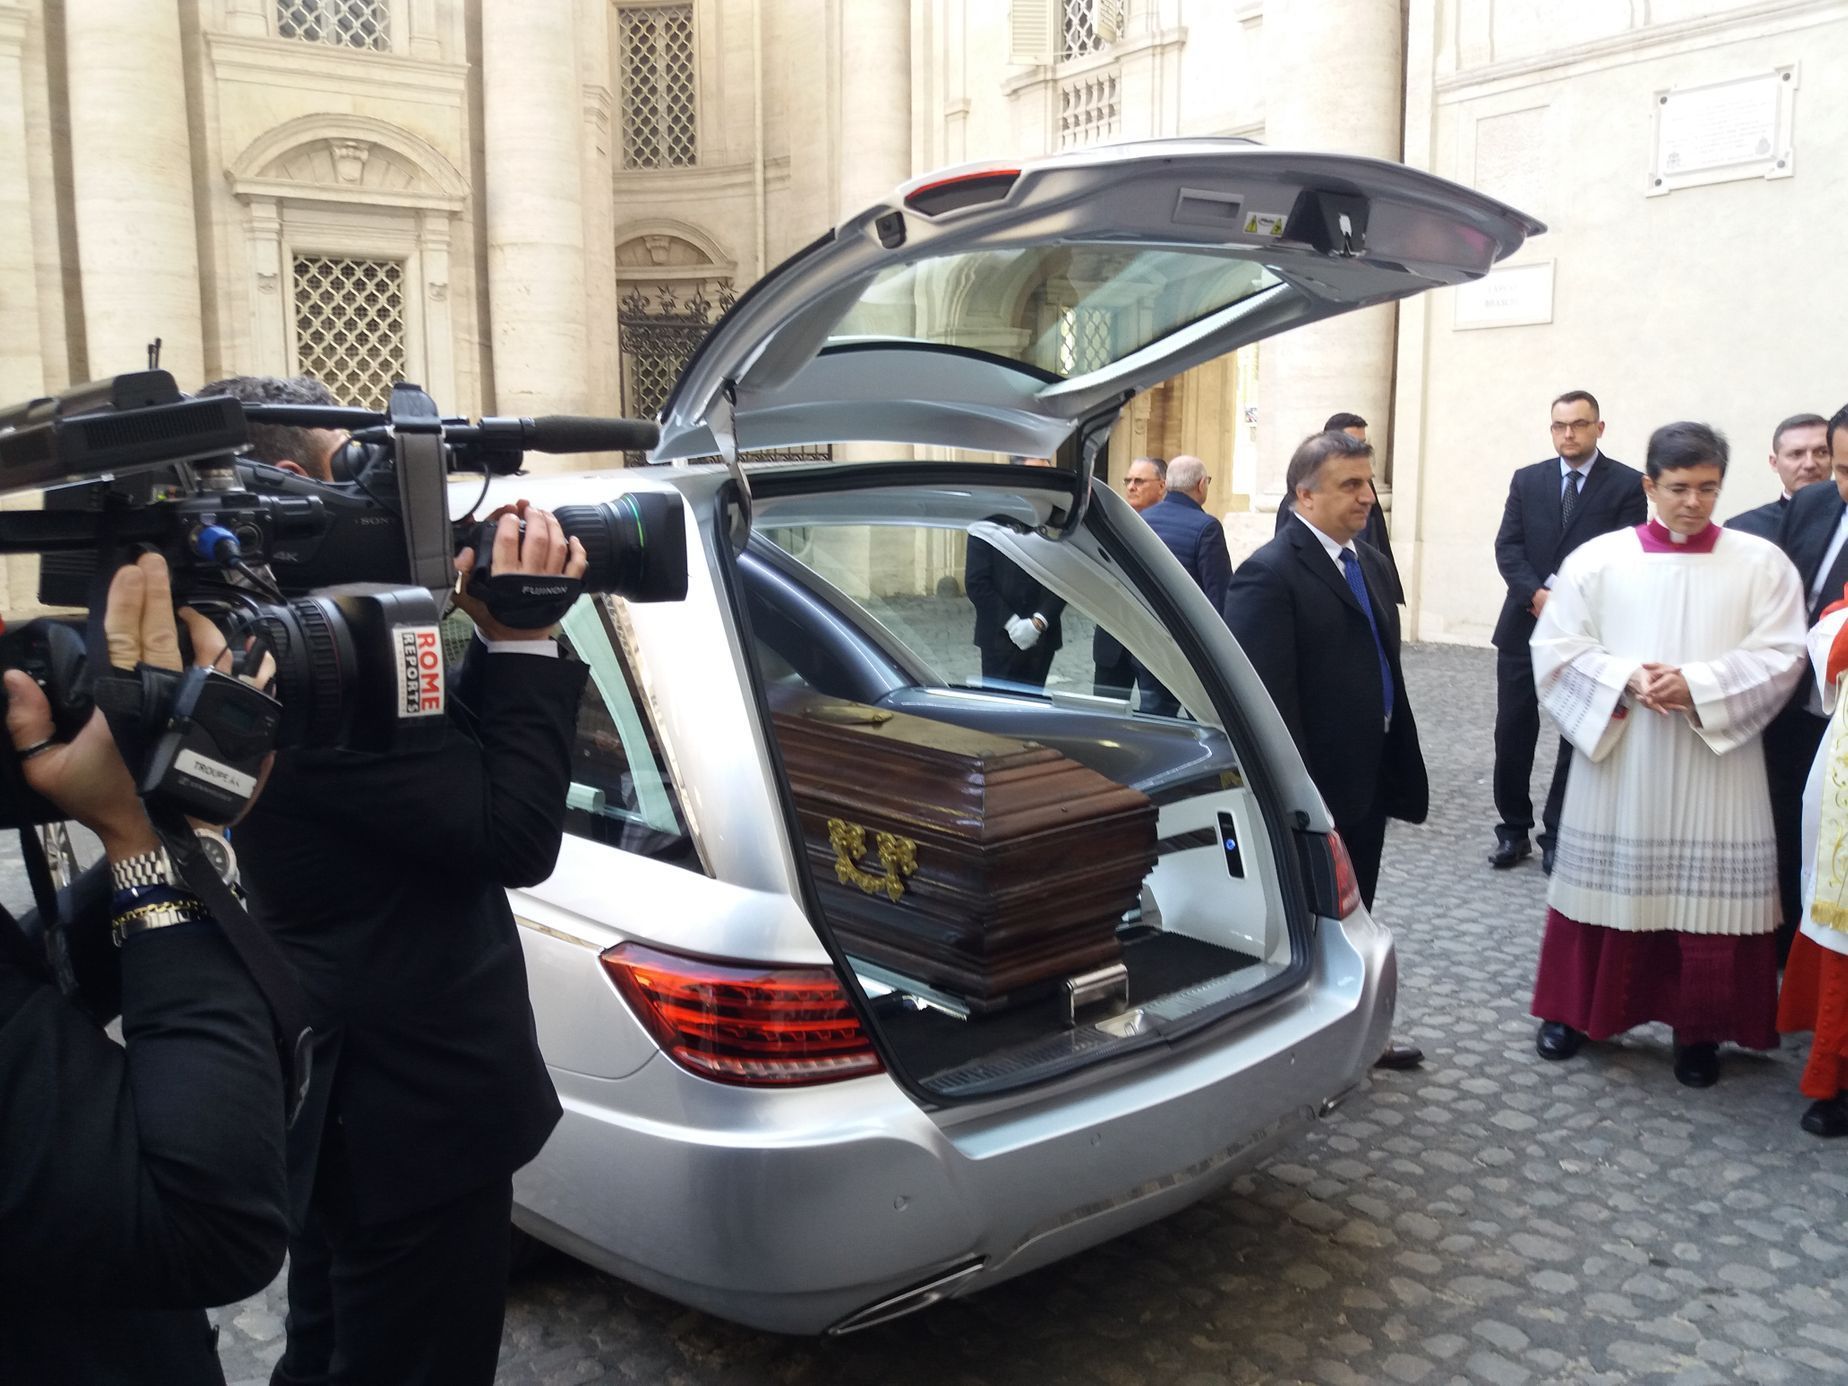 Vyzvedávání ostatků kardinála Berana